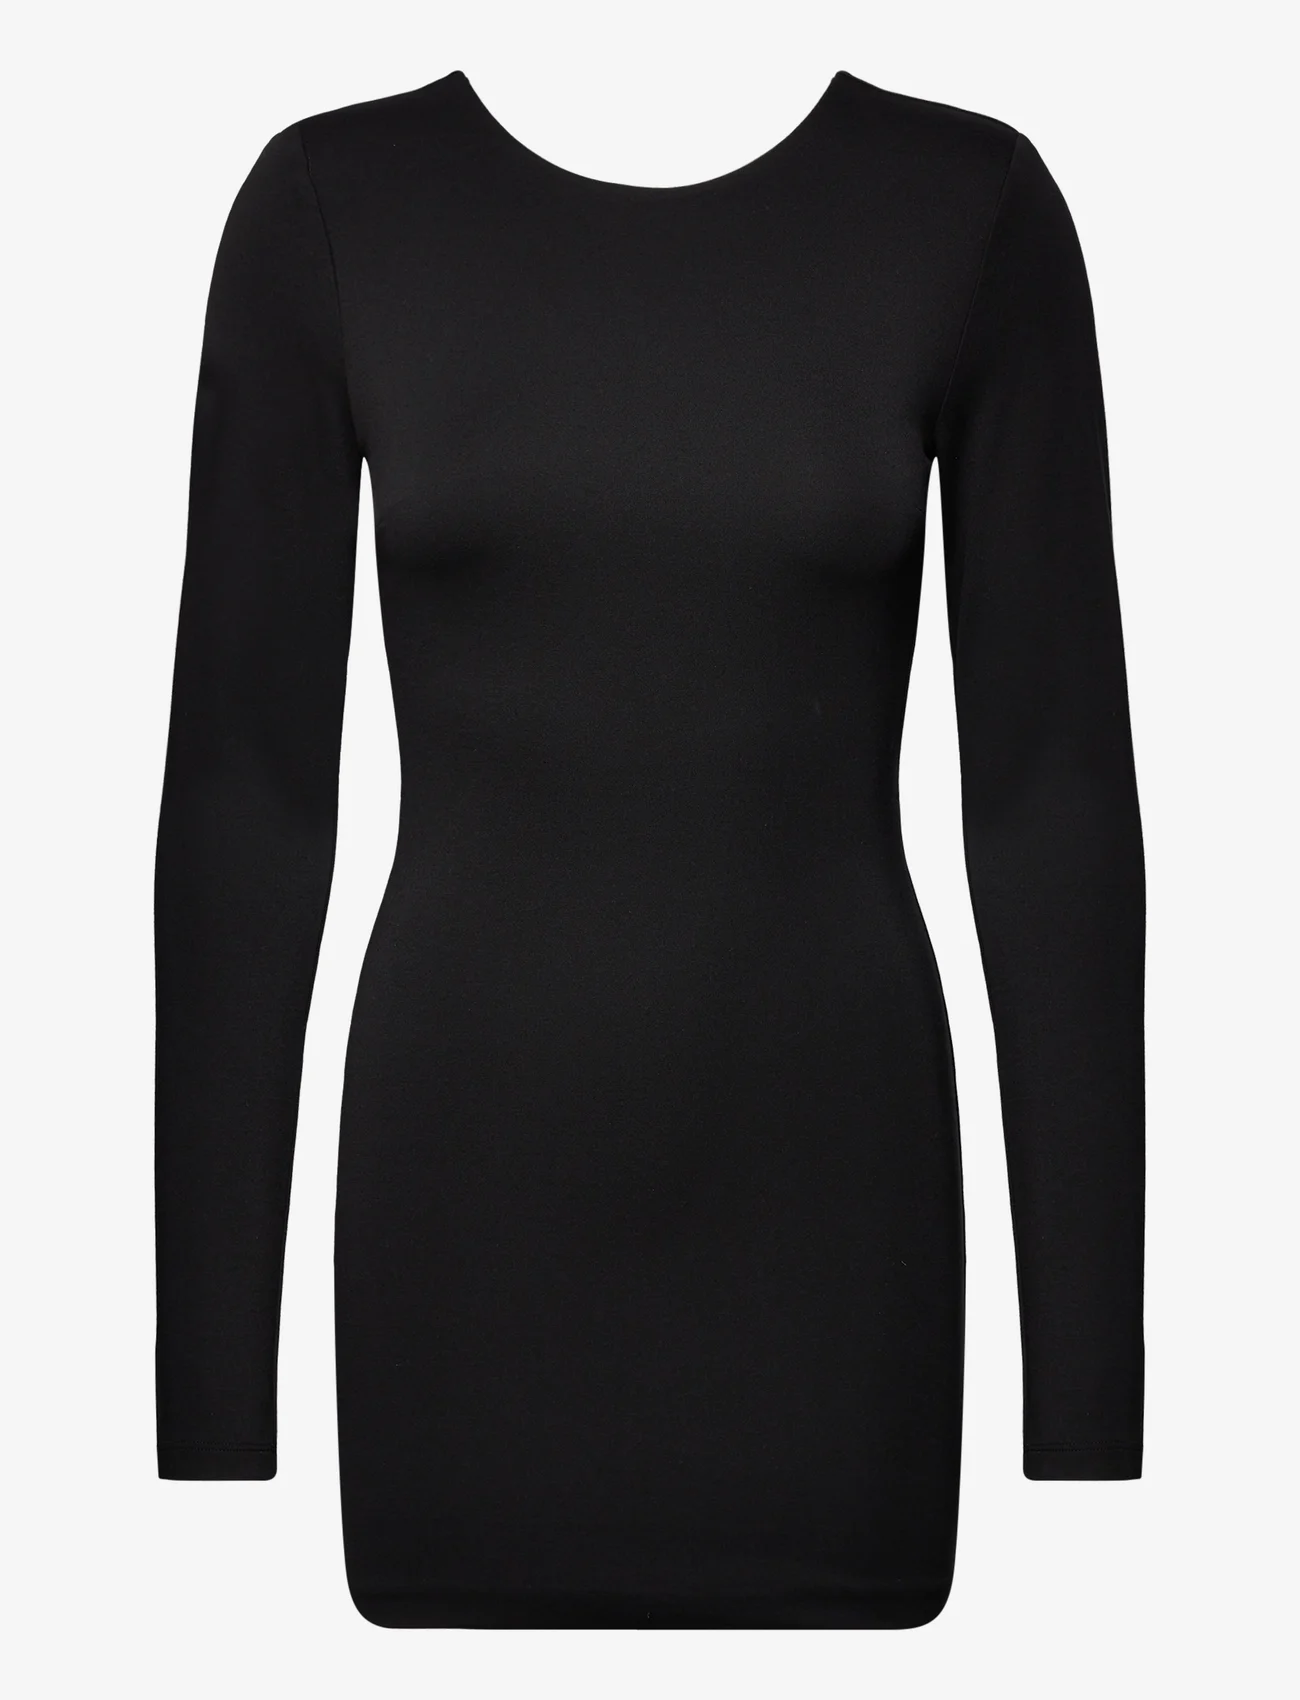 ROTATE Birger Christensen - Jersey Cut-Out Back Mini Dress - odzież imprezowa w cenach outletowych - black - 0